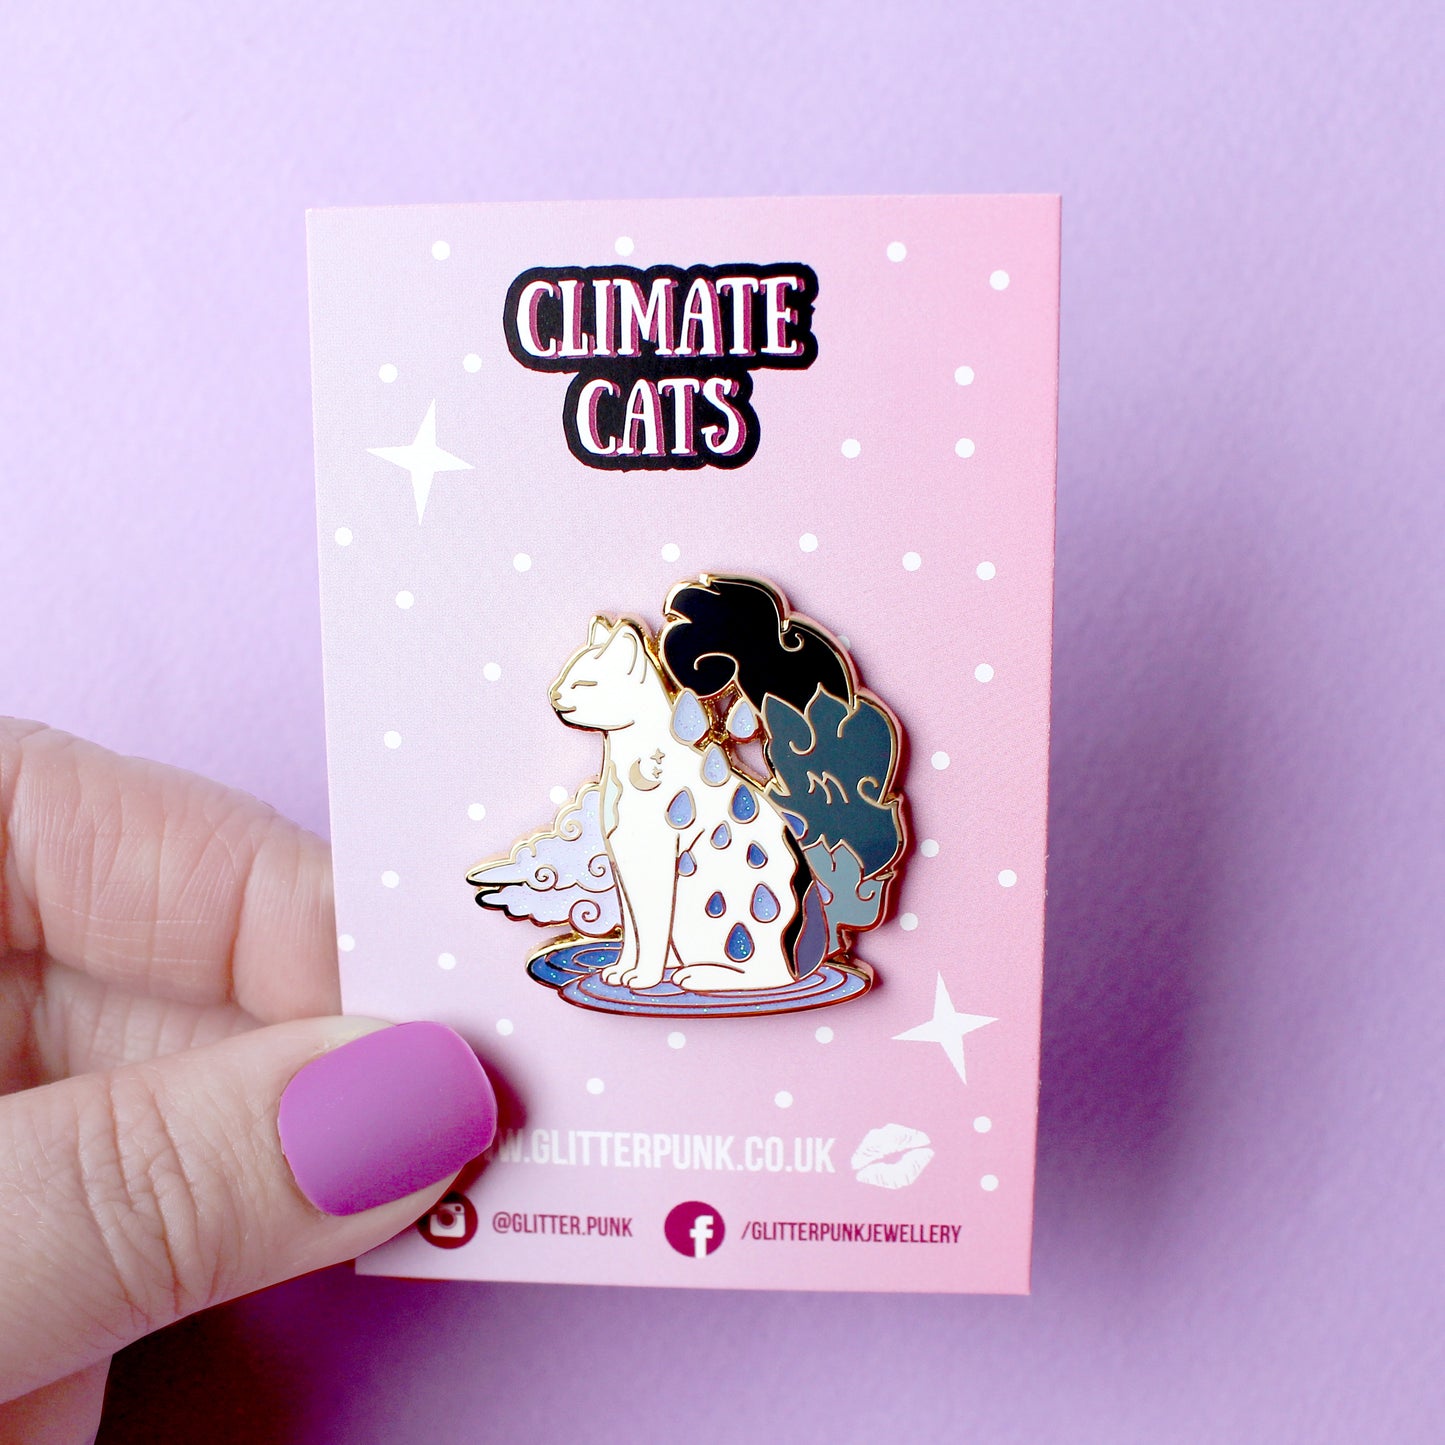 Rain Cat Enamel Pin - Climate Cats